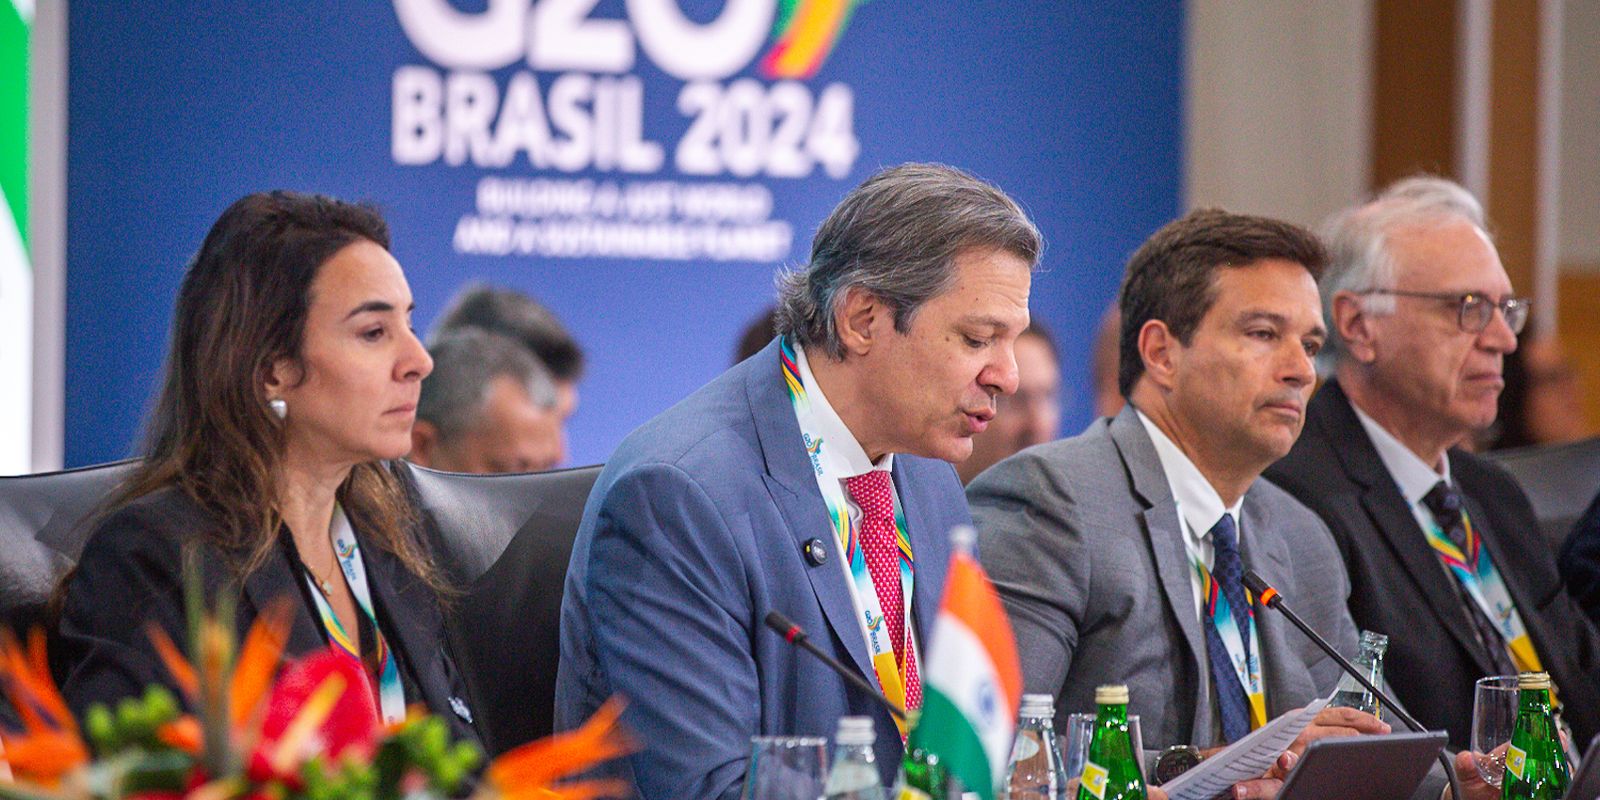 Haddad antecipa volta ao Brasil e mira pautas econômicas no Congresso